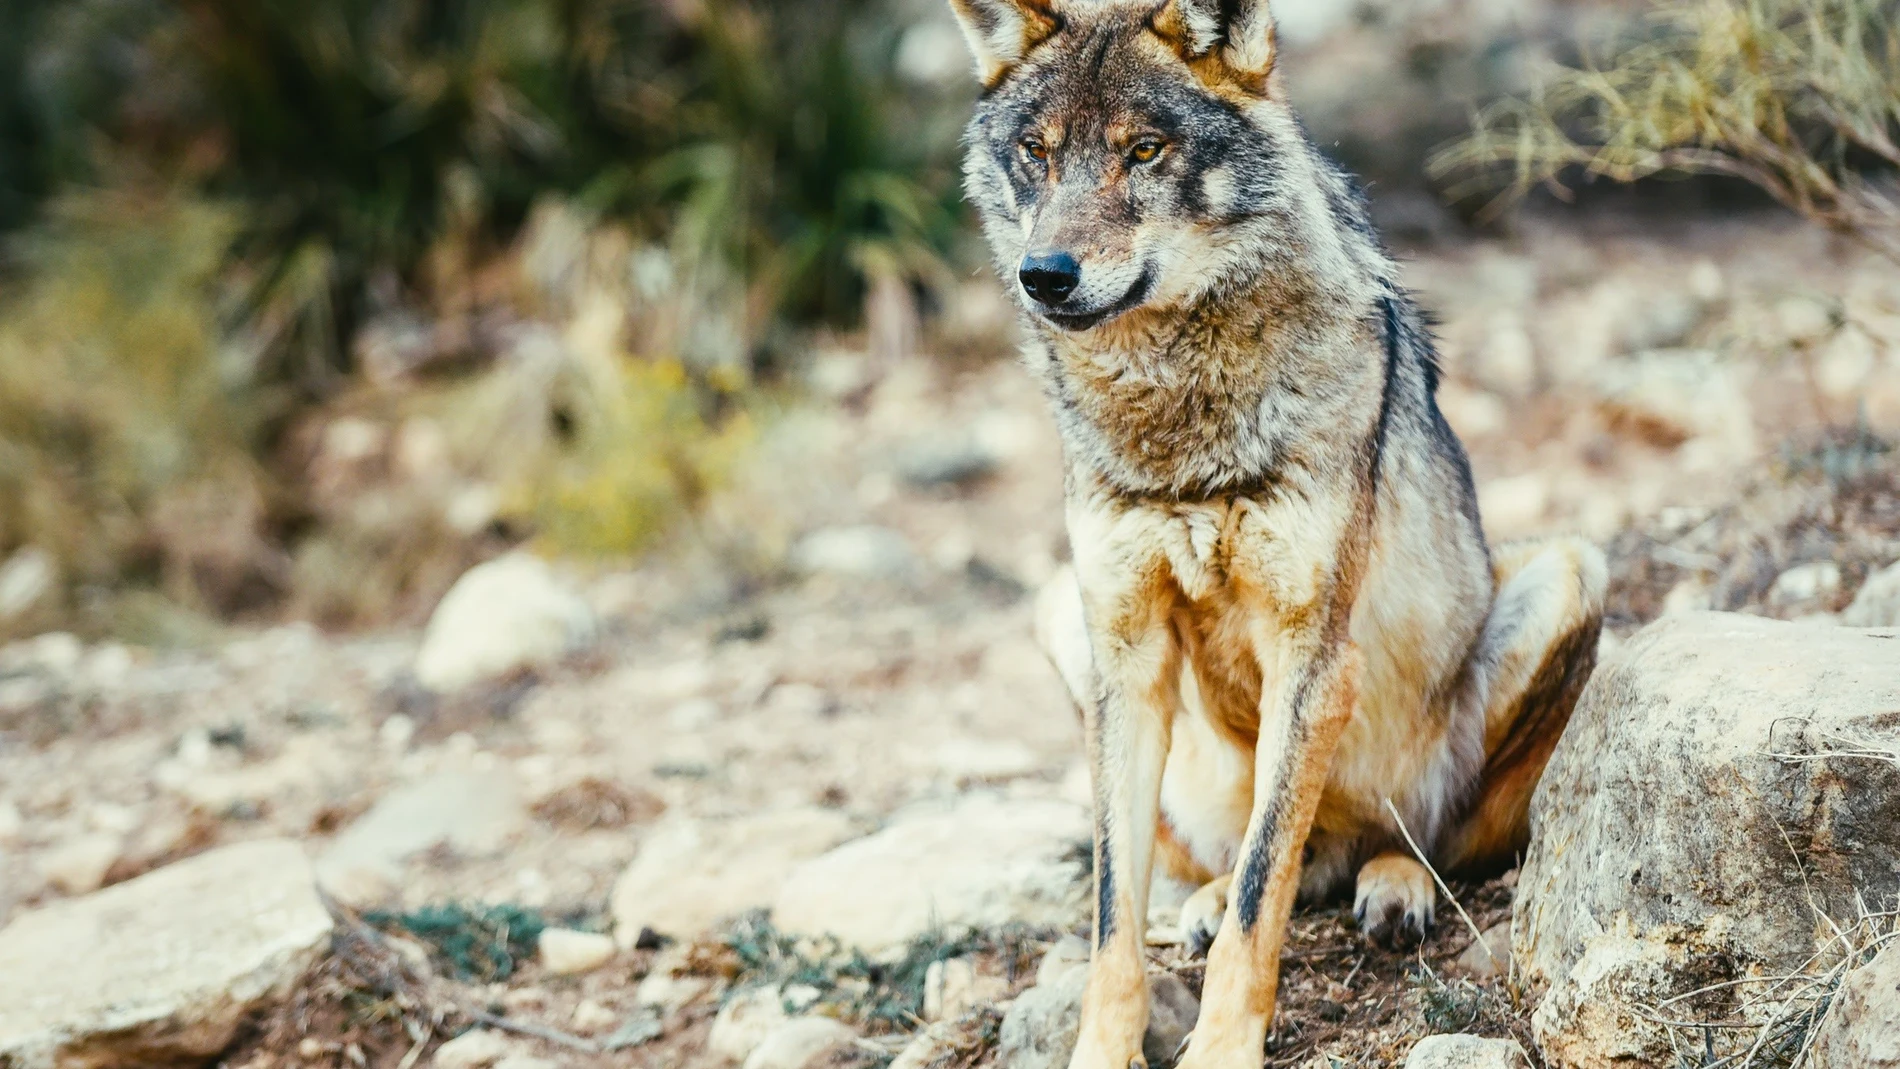 El TC anula la ley de caza de Castilla y León que permitía cazar al lobo al norte del río Duero por invadir competencias estatales